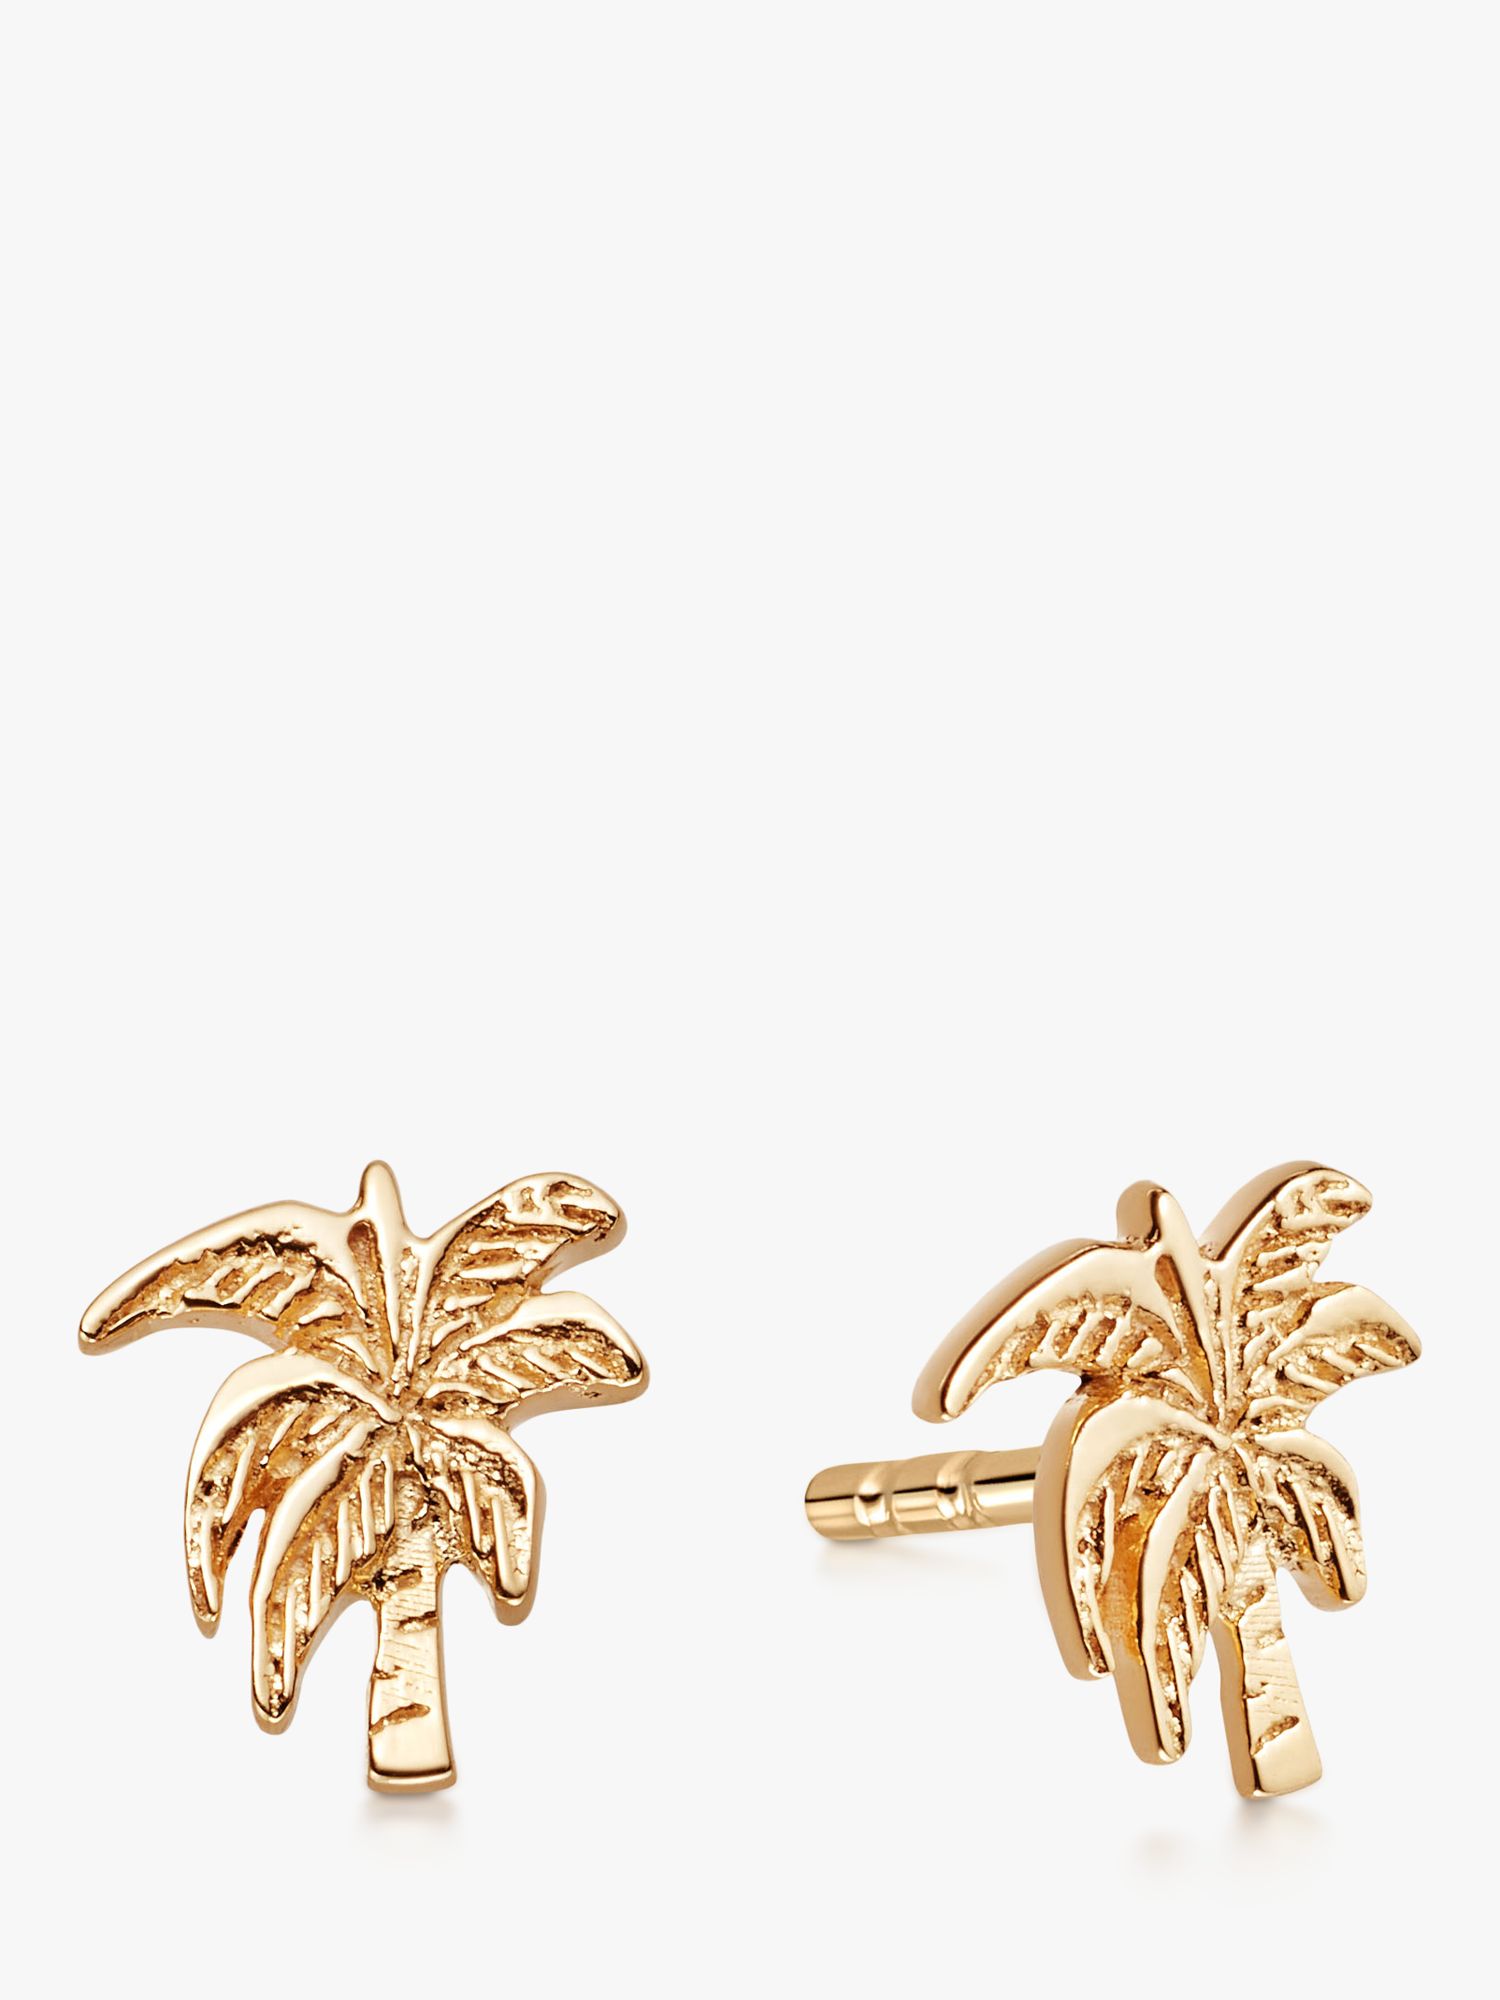 Daisy London Palm Tree Stud Earrings, Gold